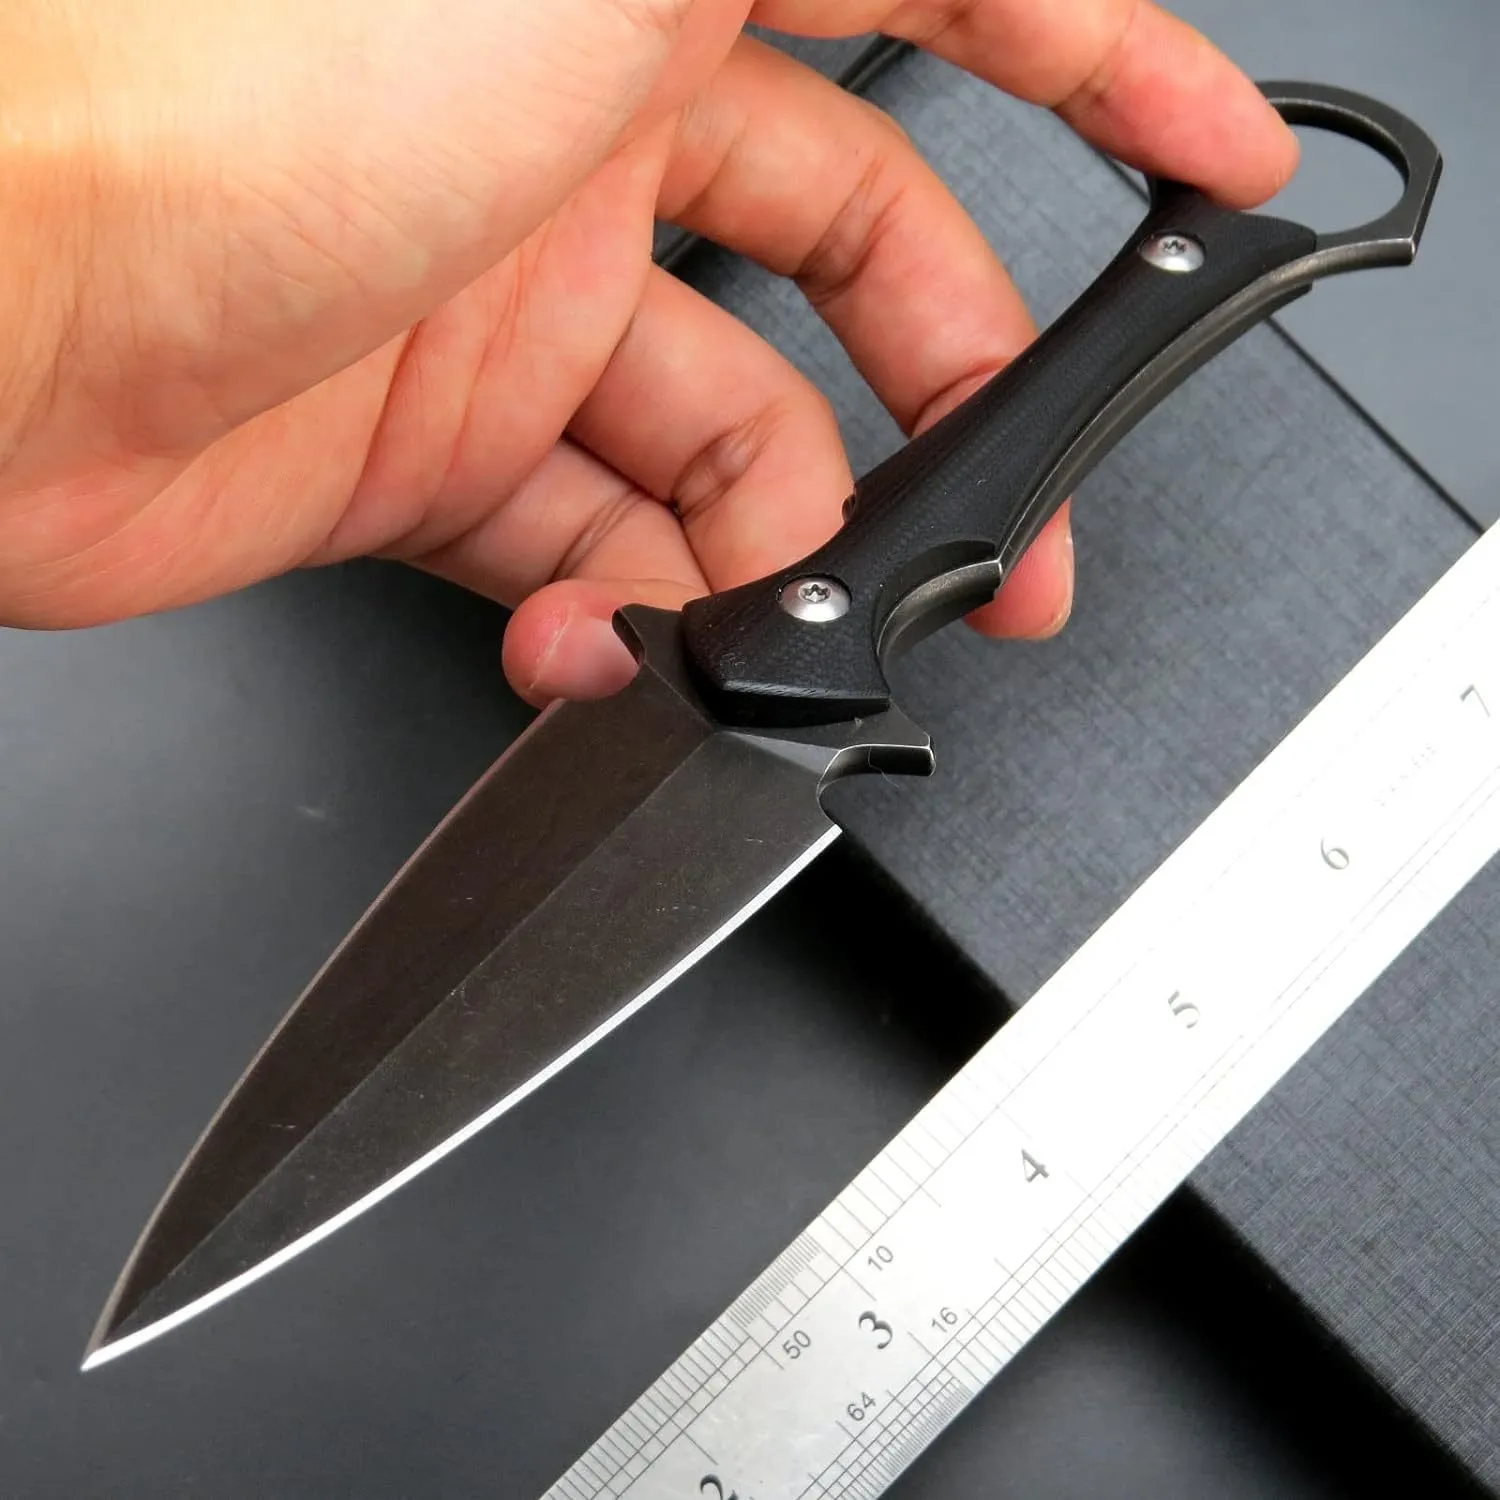 Высококачественный прямой нож для выживания D2, черный камень, двухстороннее лезвие, полный Тан G10/ручка из микарты, тактические ножи для кемпинга на открытом воздухе с Kydex